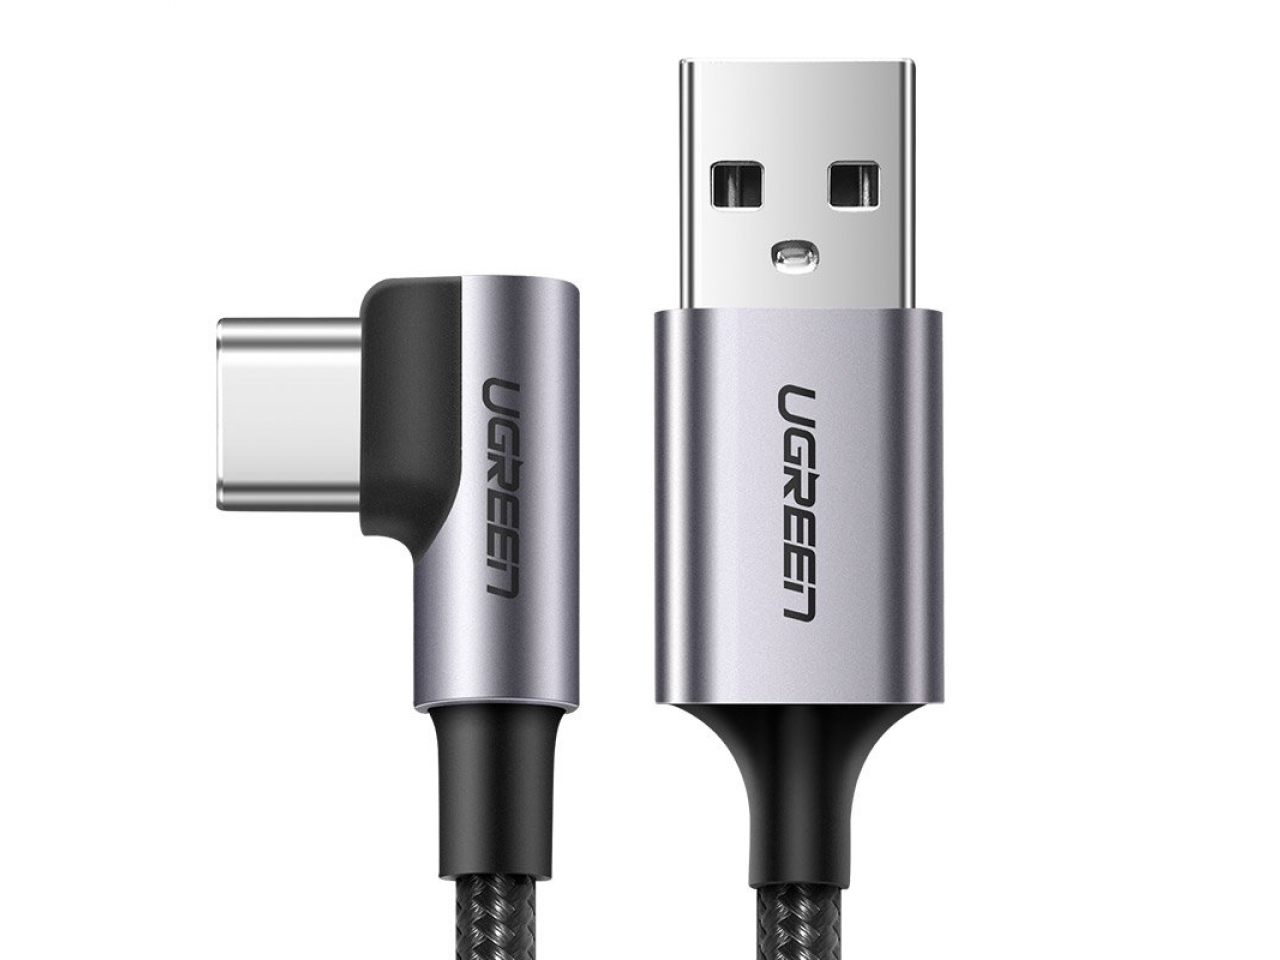 UGREEN Quick Charge 3.0 USB Handy Ladegerät schnell und sicher schwarz